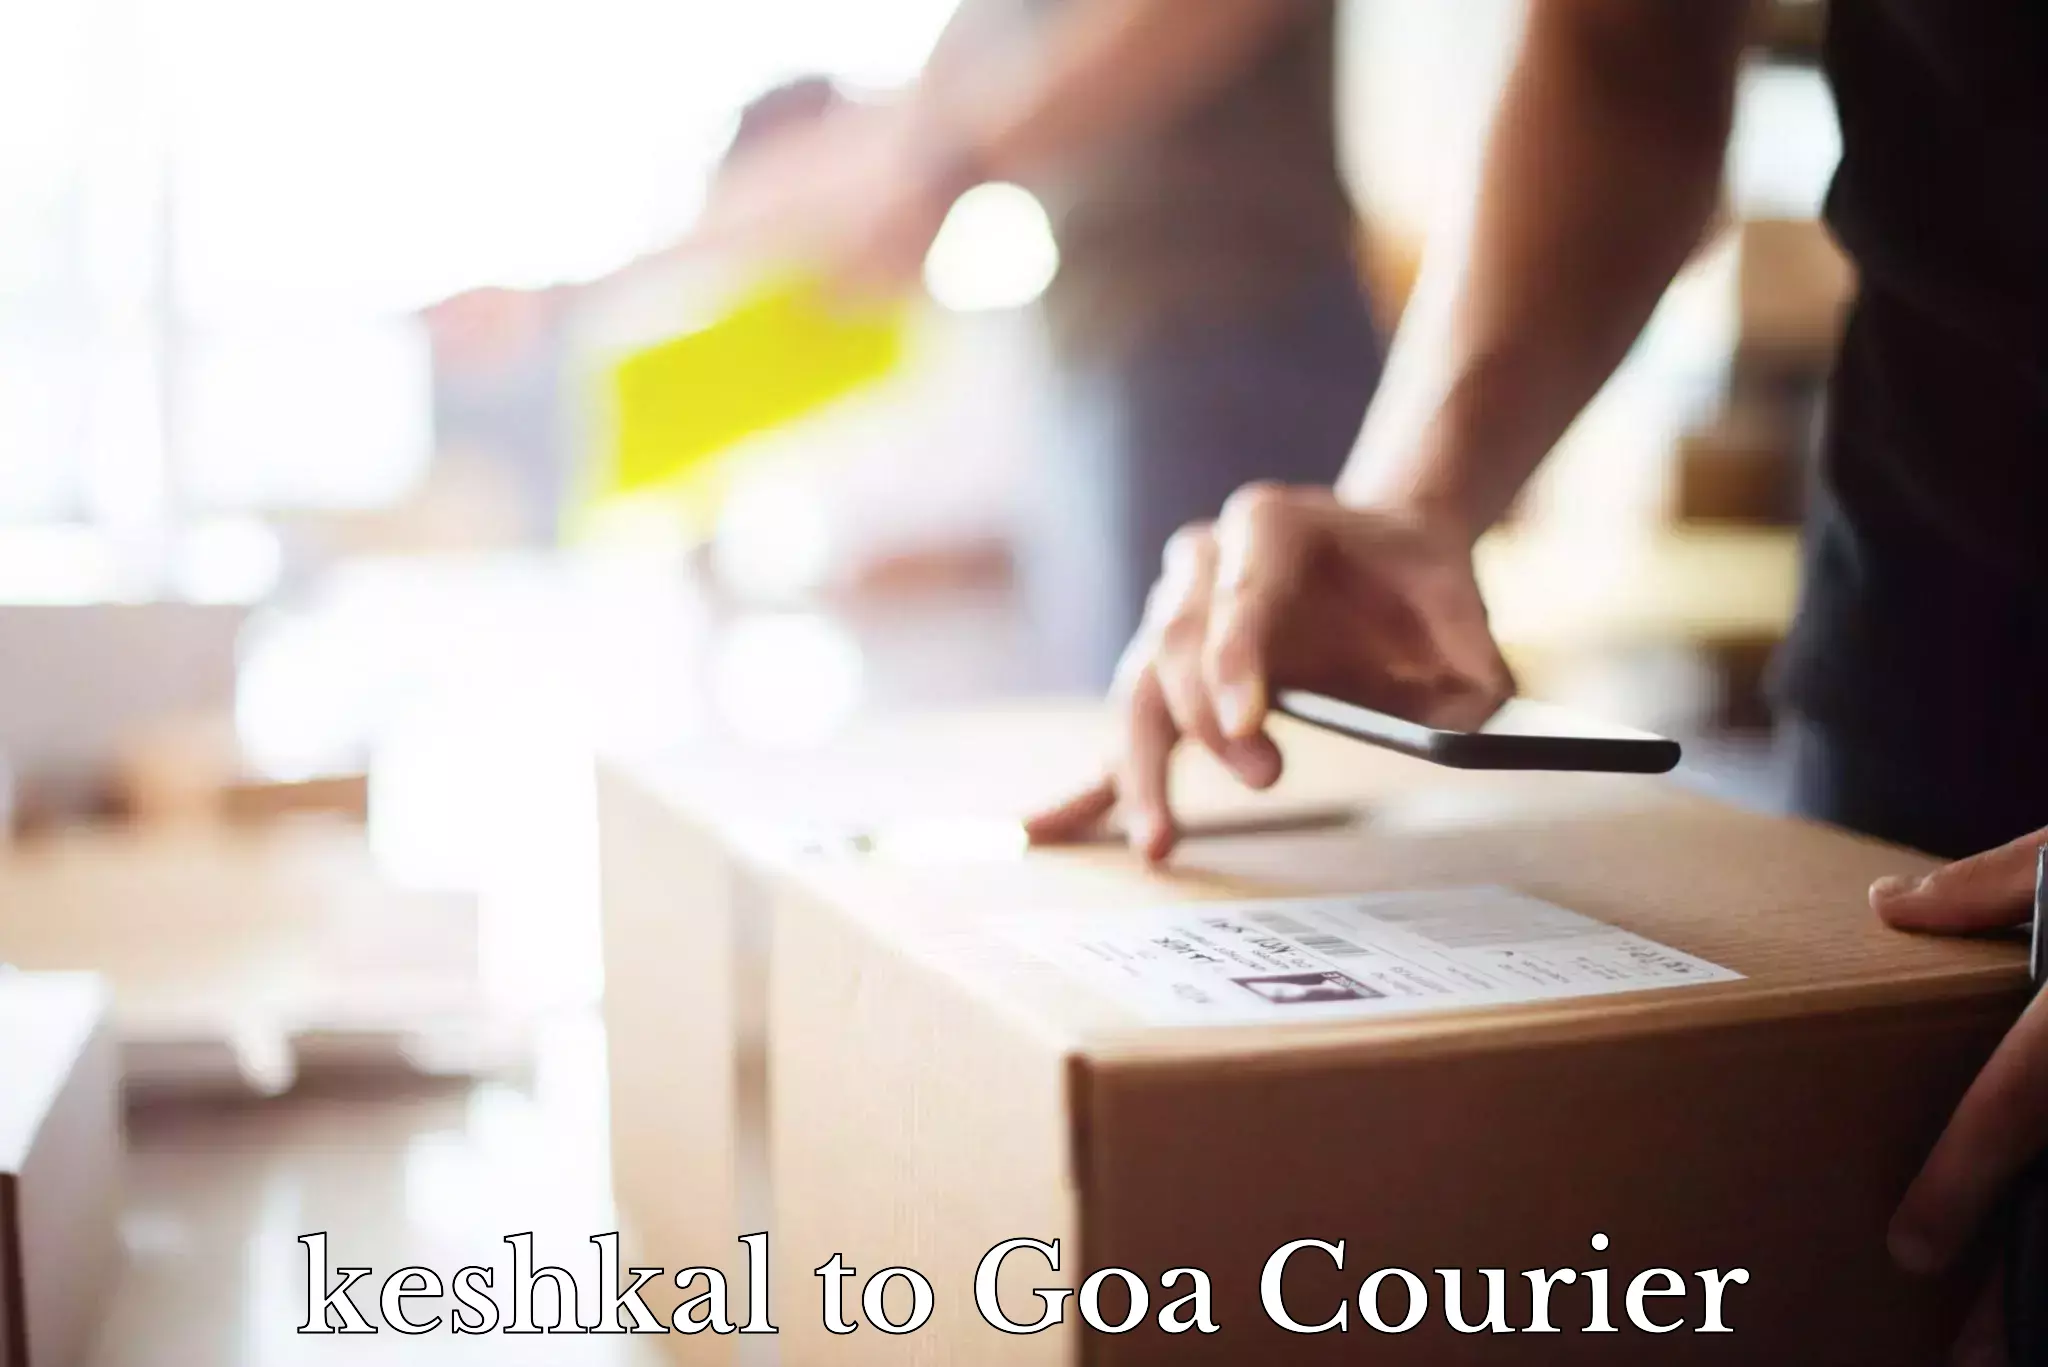 Express logistics service keshkal to Goa University